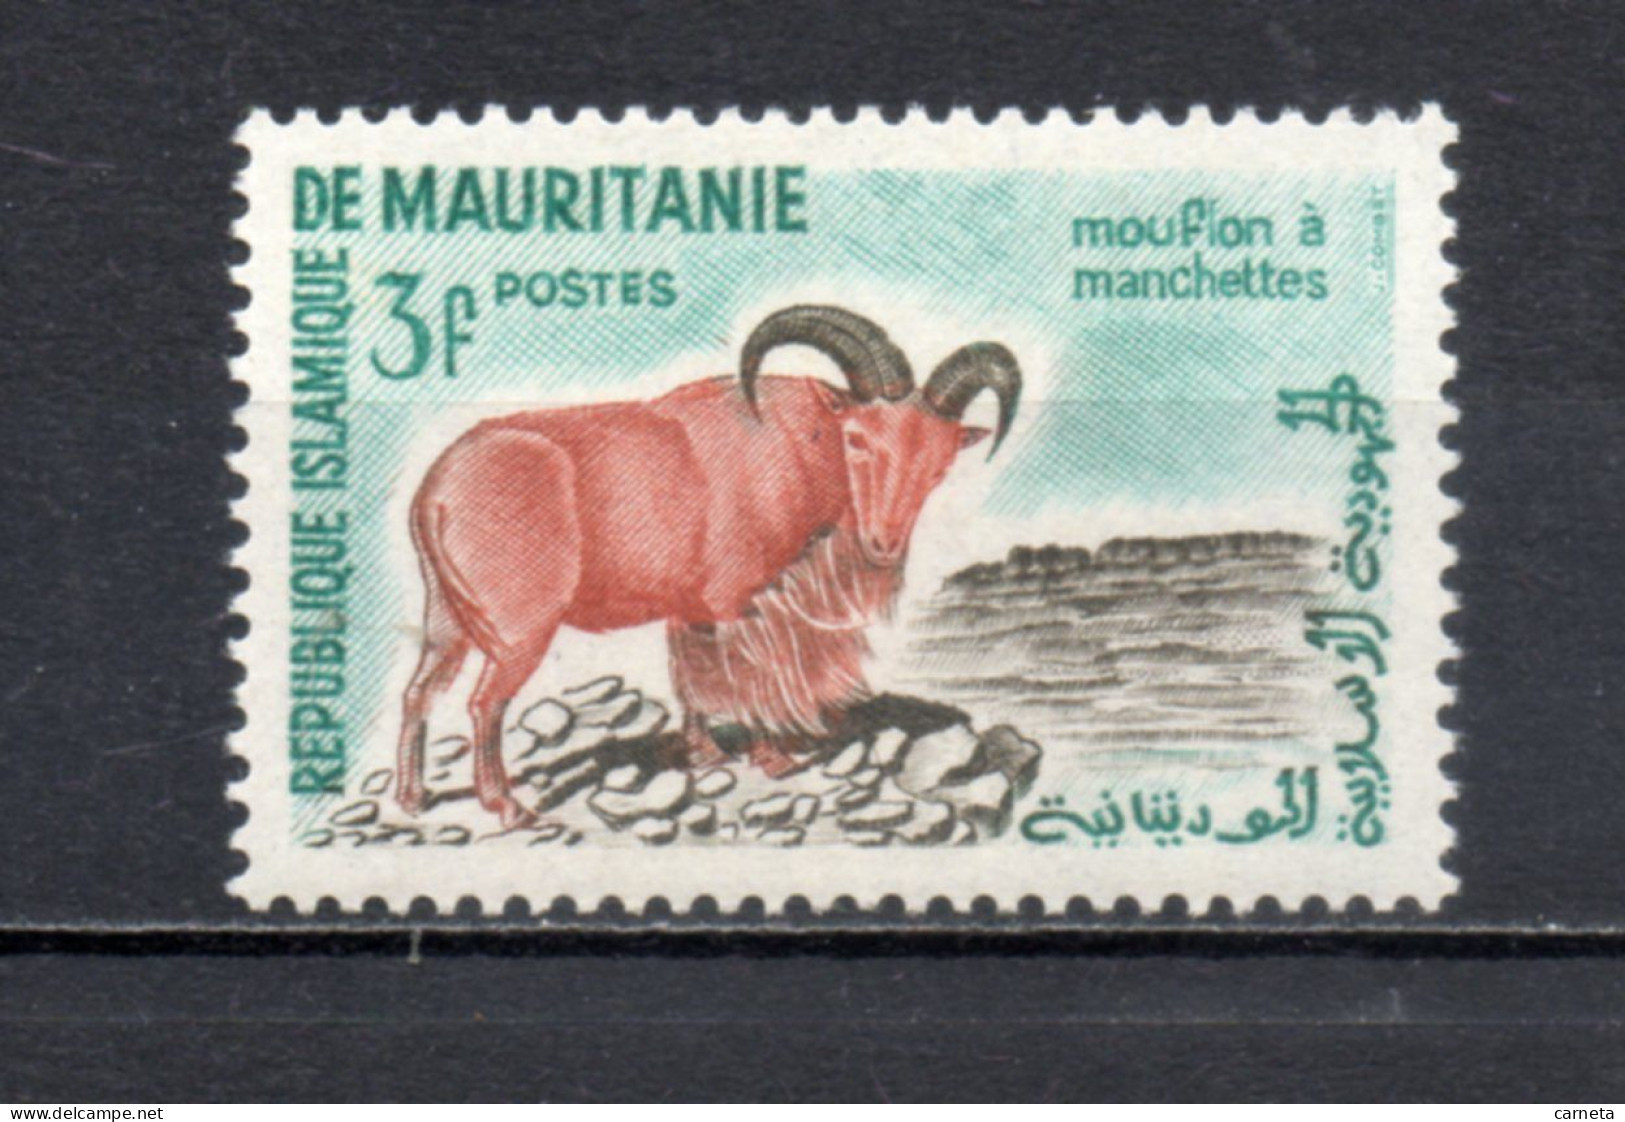 MAURITANIE  N° 143   NEUF SANS CHARNIERE   COTE 0.80€    ANIMAUX FAUNE - Mauretanien (1960-...)